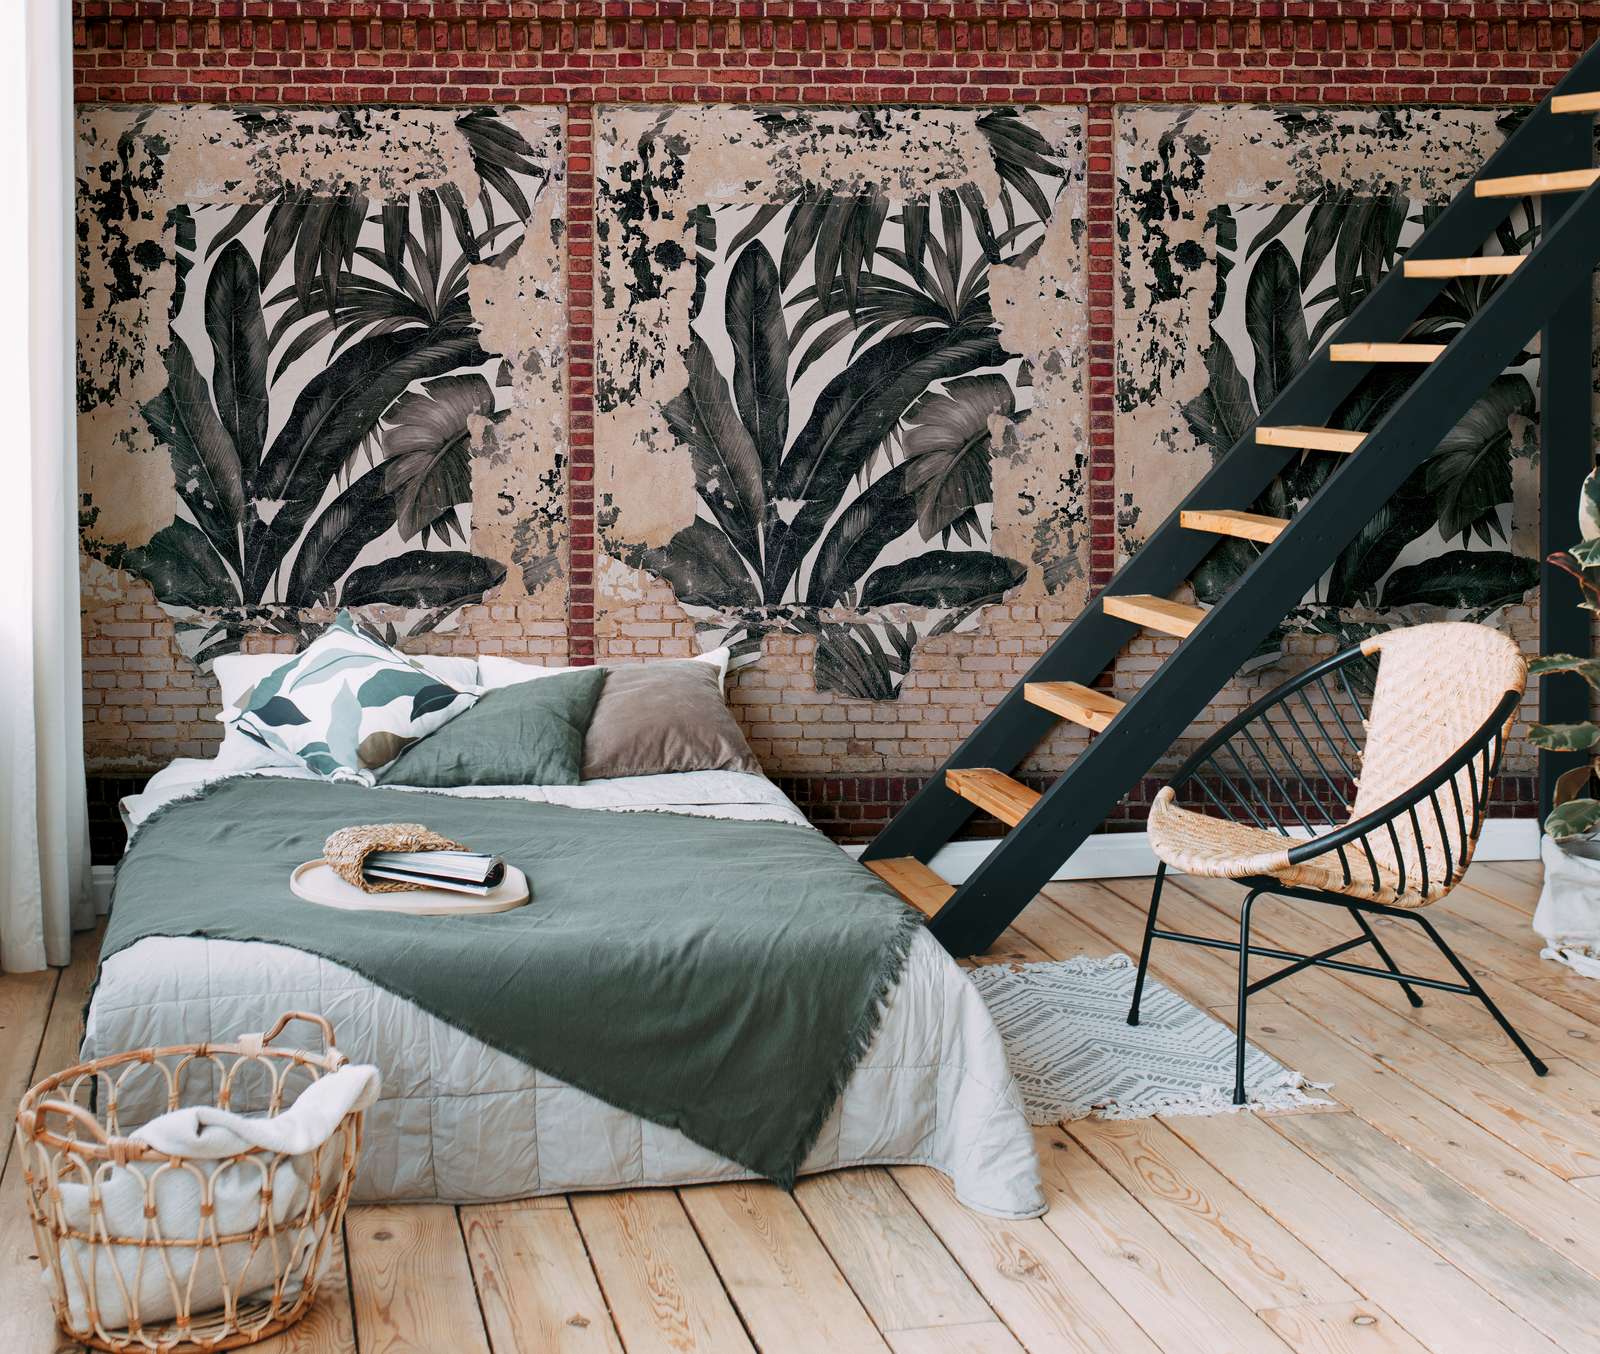             Baksteenbehang met palmbladeren in used look - bruin, beige, rood
        